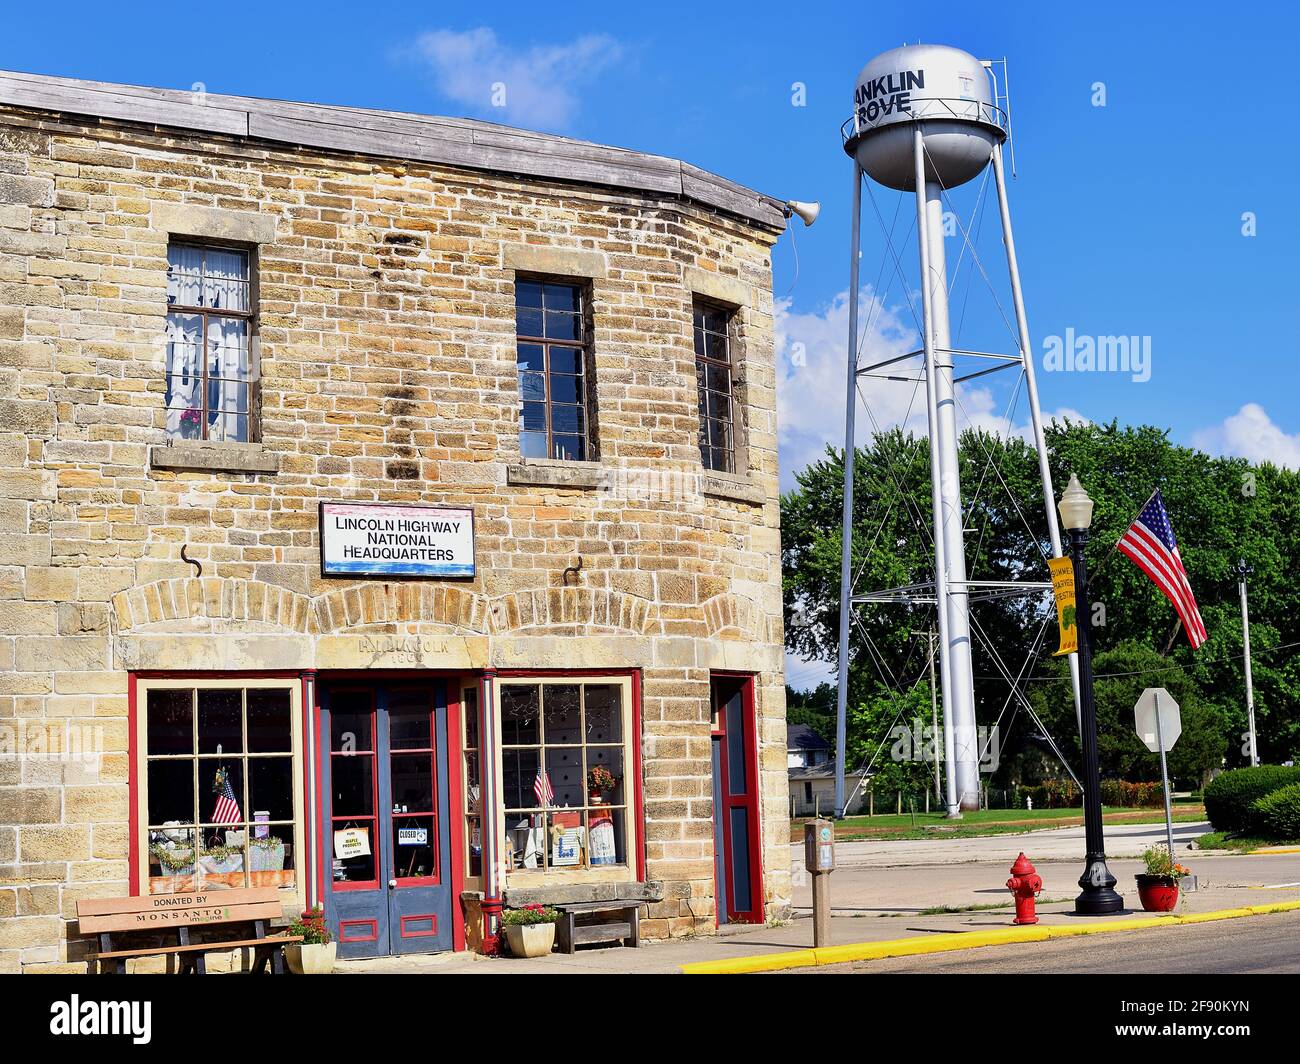 Franklin Grove, Illinois, Stati Uniti. Il Lincoln Highway National Headquarters Building è ospitato in un negozio di articoli secchi restaurato del 1860. Foto Stock